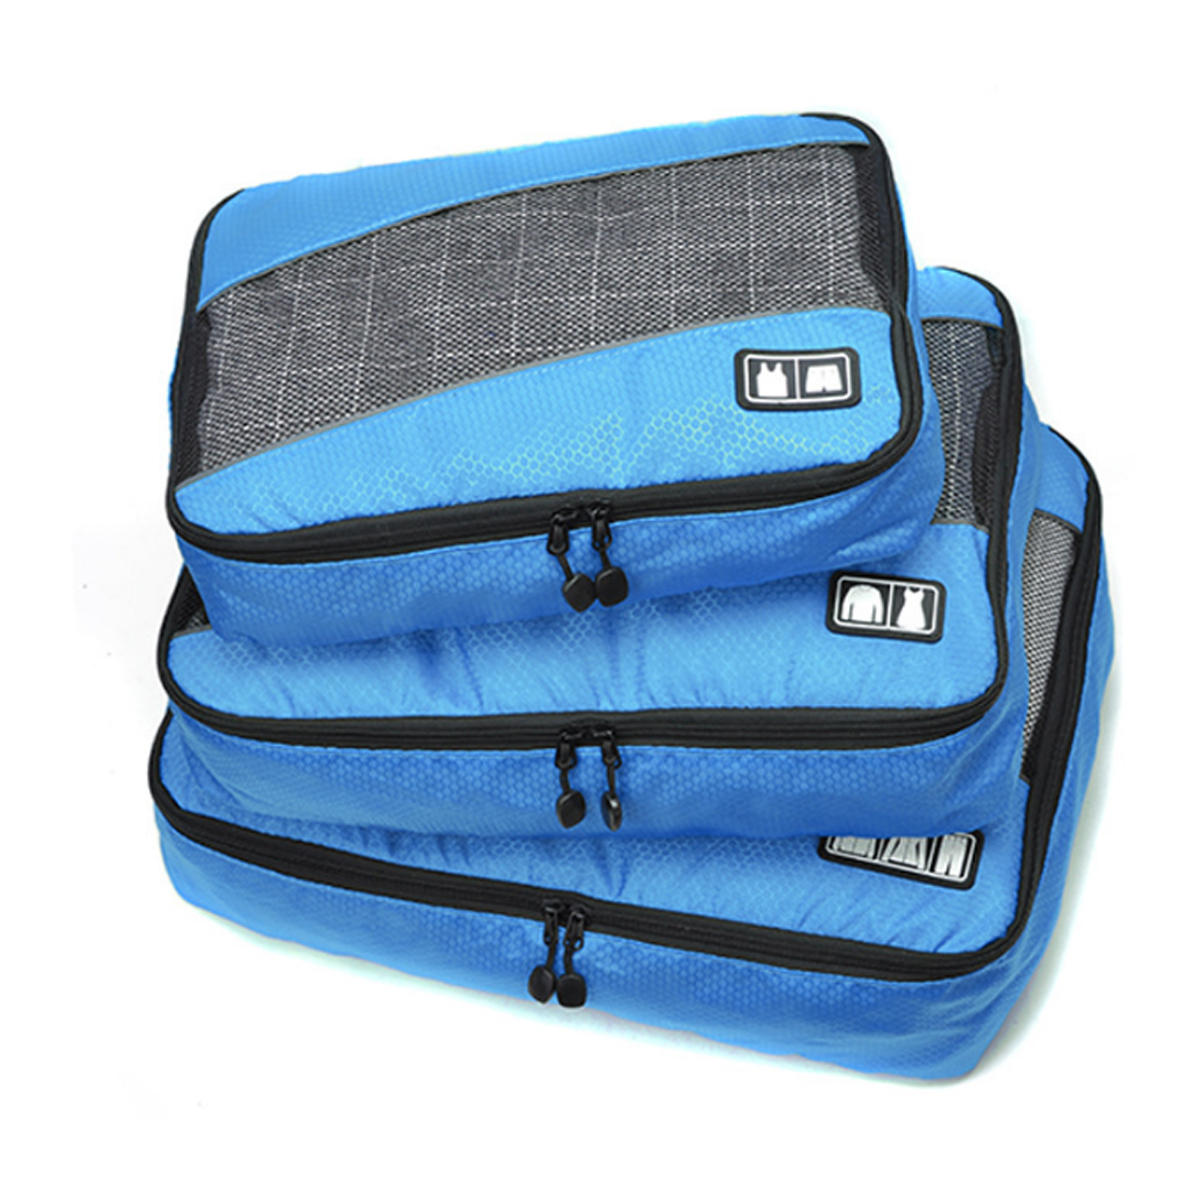 Vízálló tárolózsák készlet alsónemű, ruházat és személyi higiéniai cikkek tárolásához utazás közben (3 db)